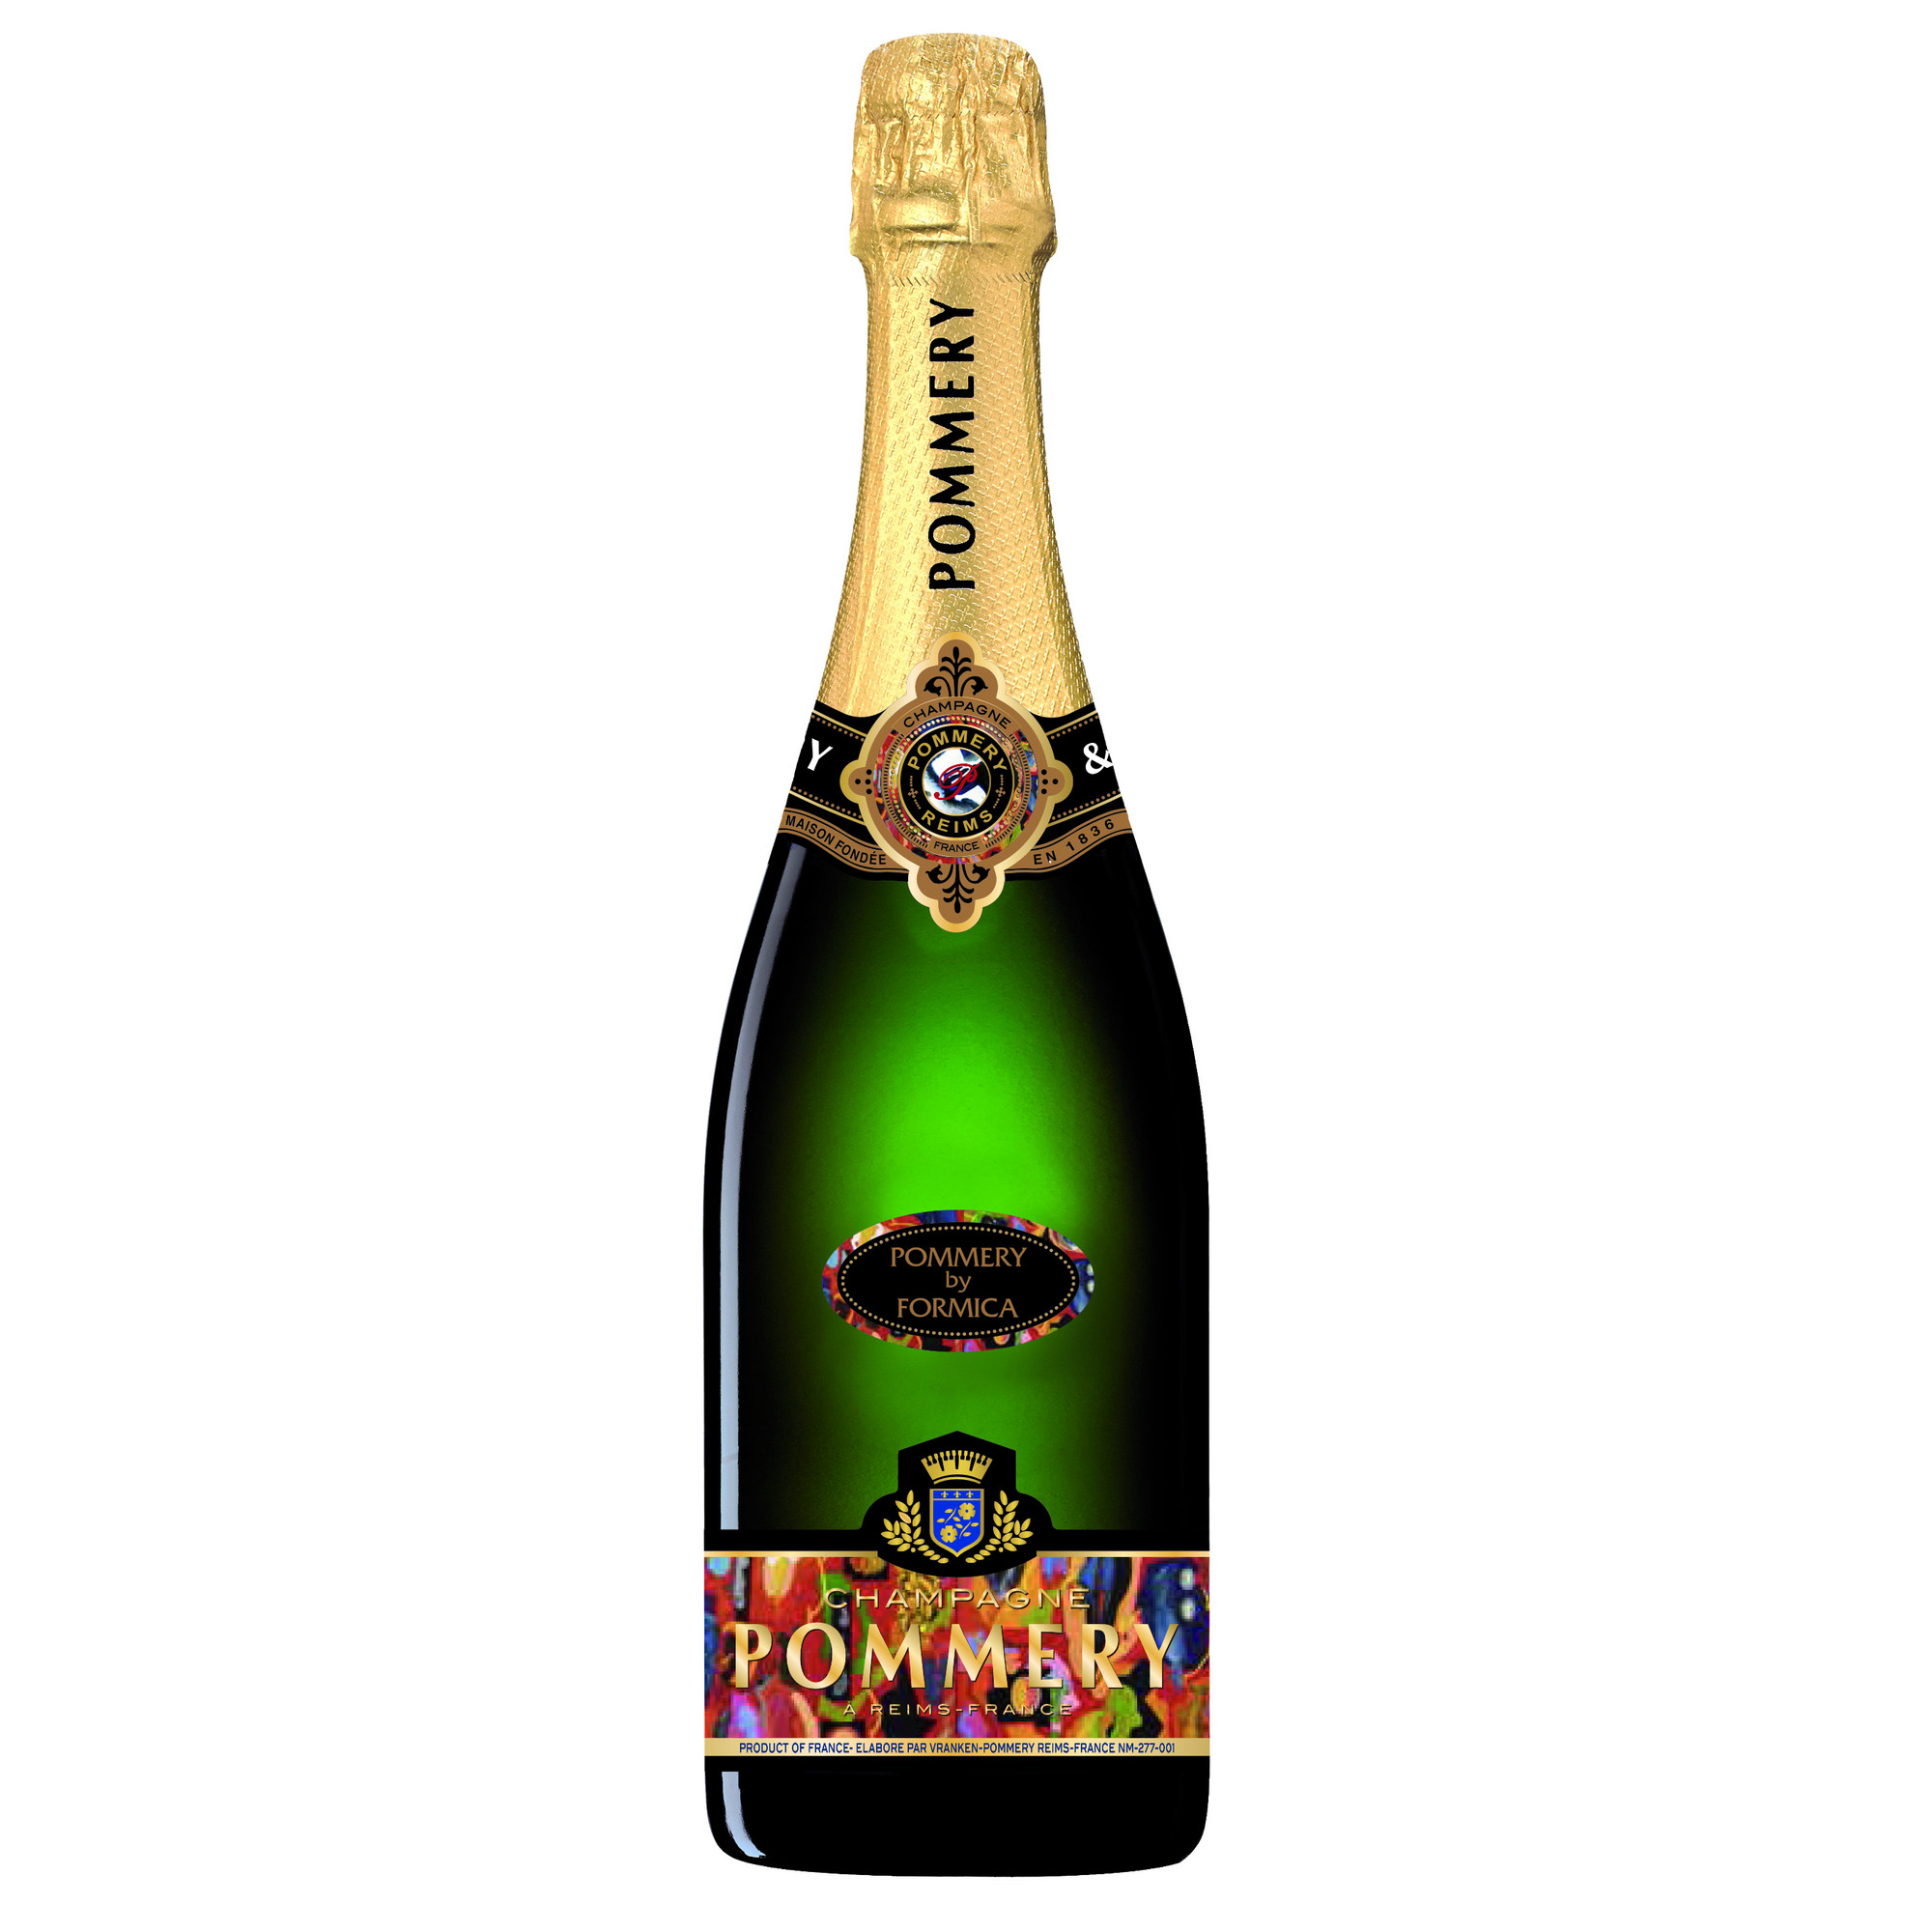 Champagne Pommery Noir Limited Edition, Brut, Champagne AC, Champagne, Schaumwein bei Hawesko